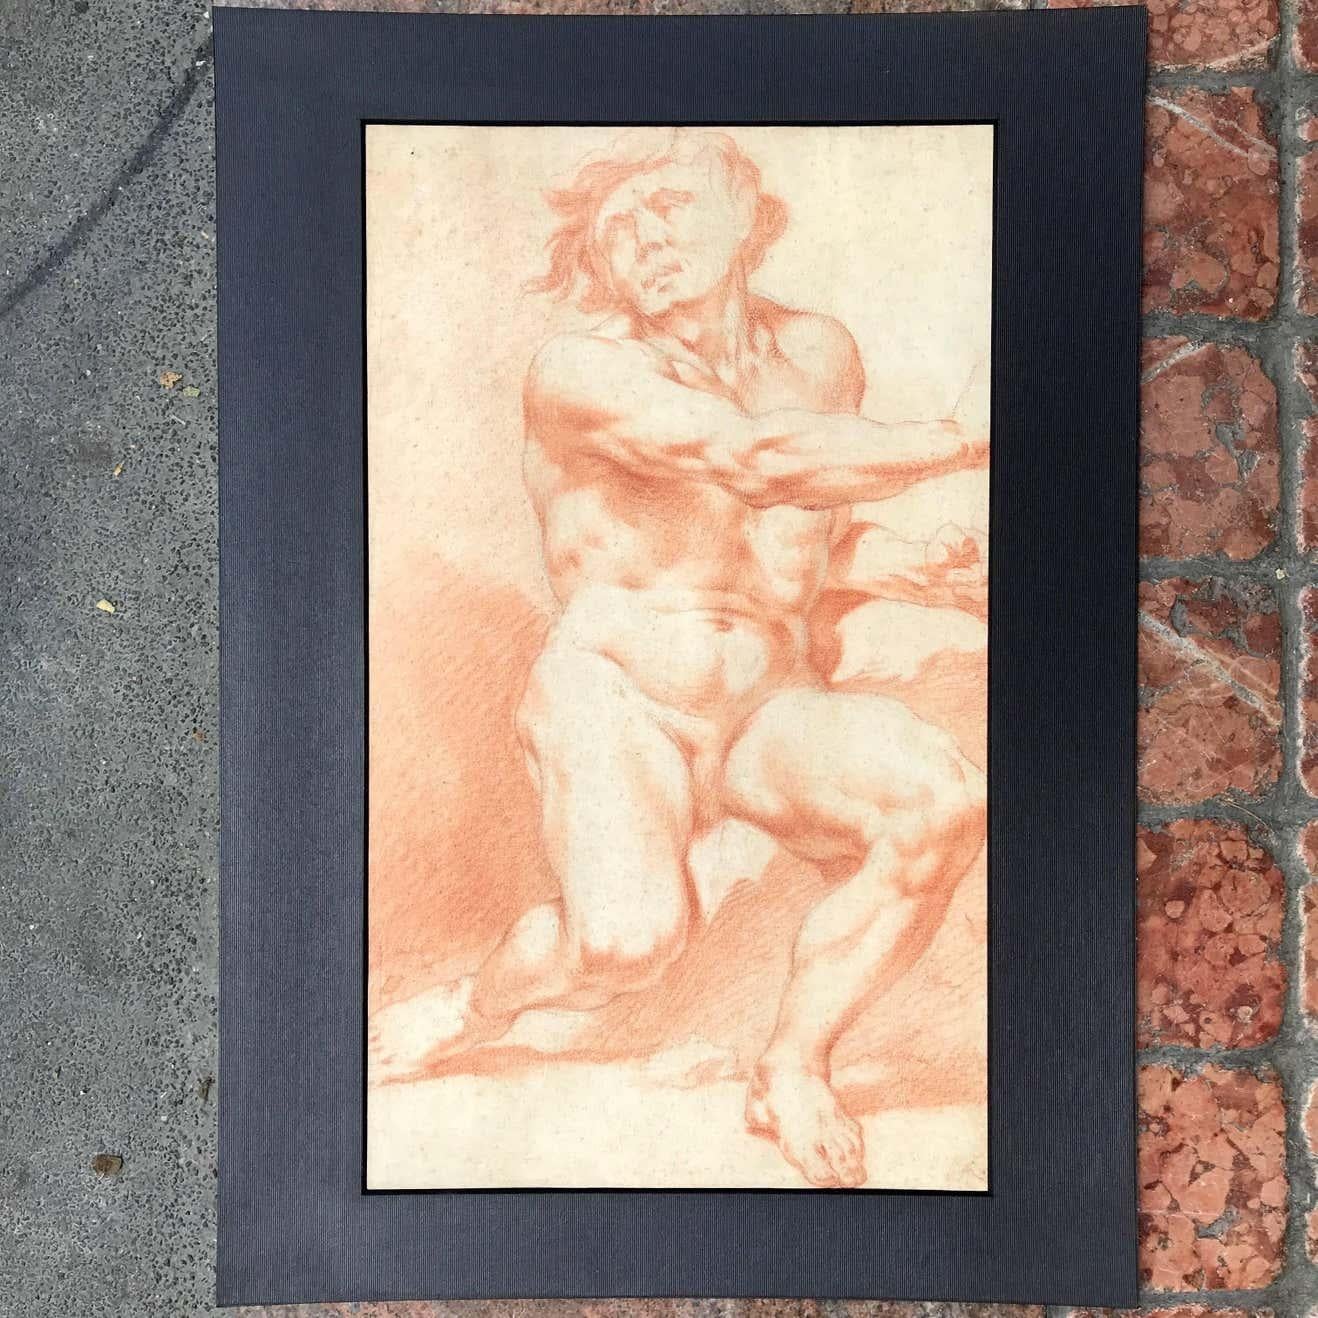 Paar neoklassizistische Zeichnungen von sitzenden männlichen Akten in Rötel auf Papier, zwei akademische Studien von nackten Männern, italienische Zeichnungen auf Papier nach Procaccini, aus dem späten 18. Jahrhundert.
Beide Werke stammen aus einer